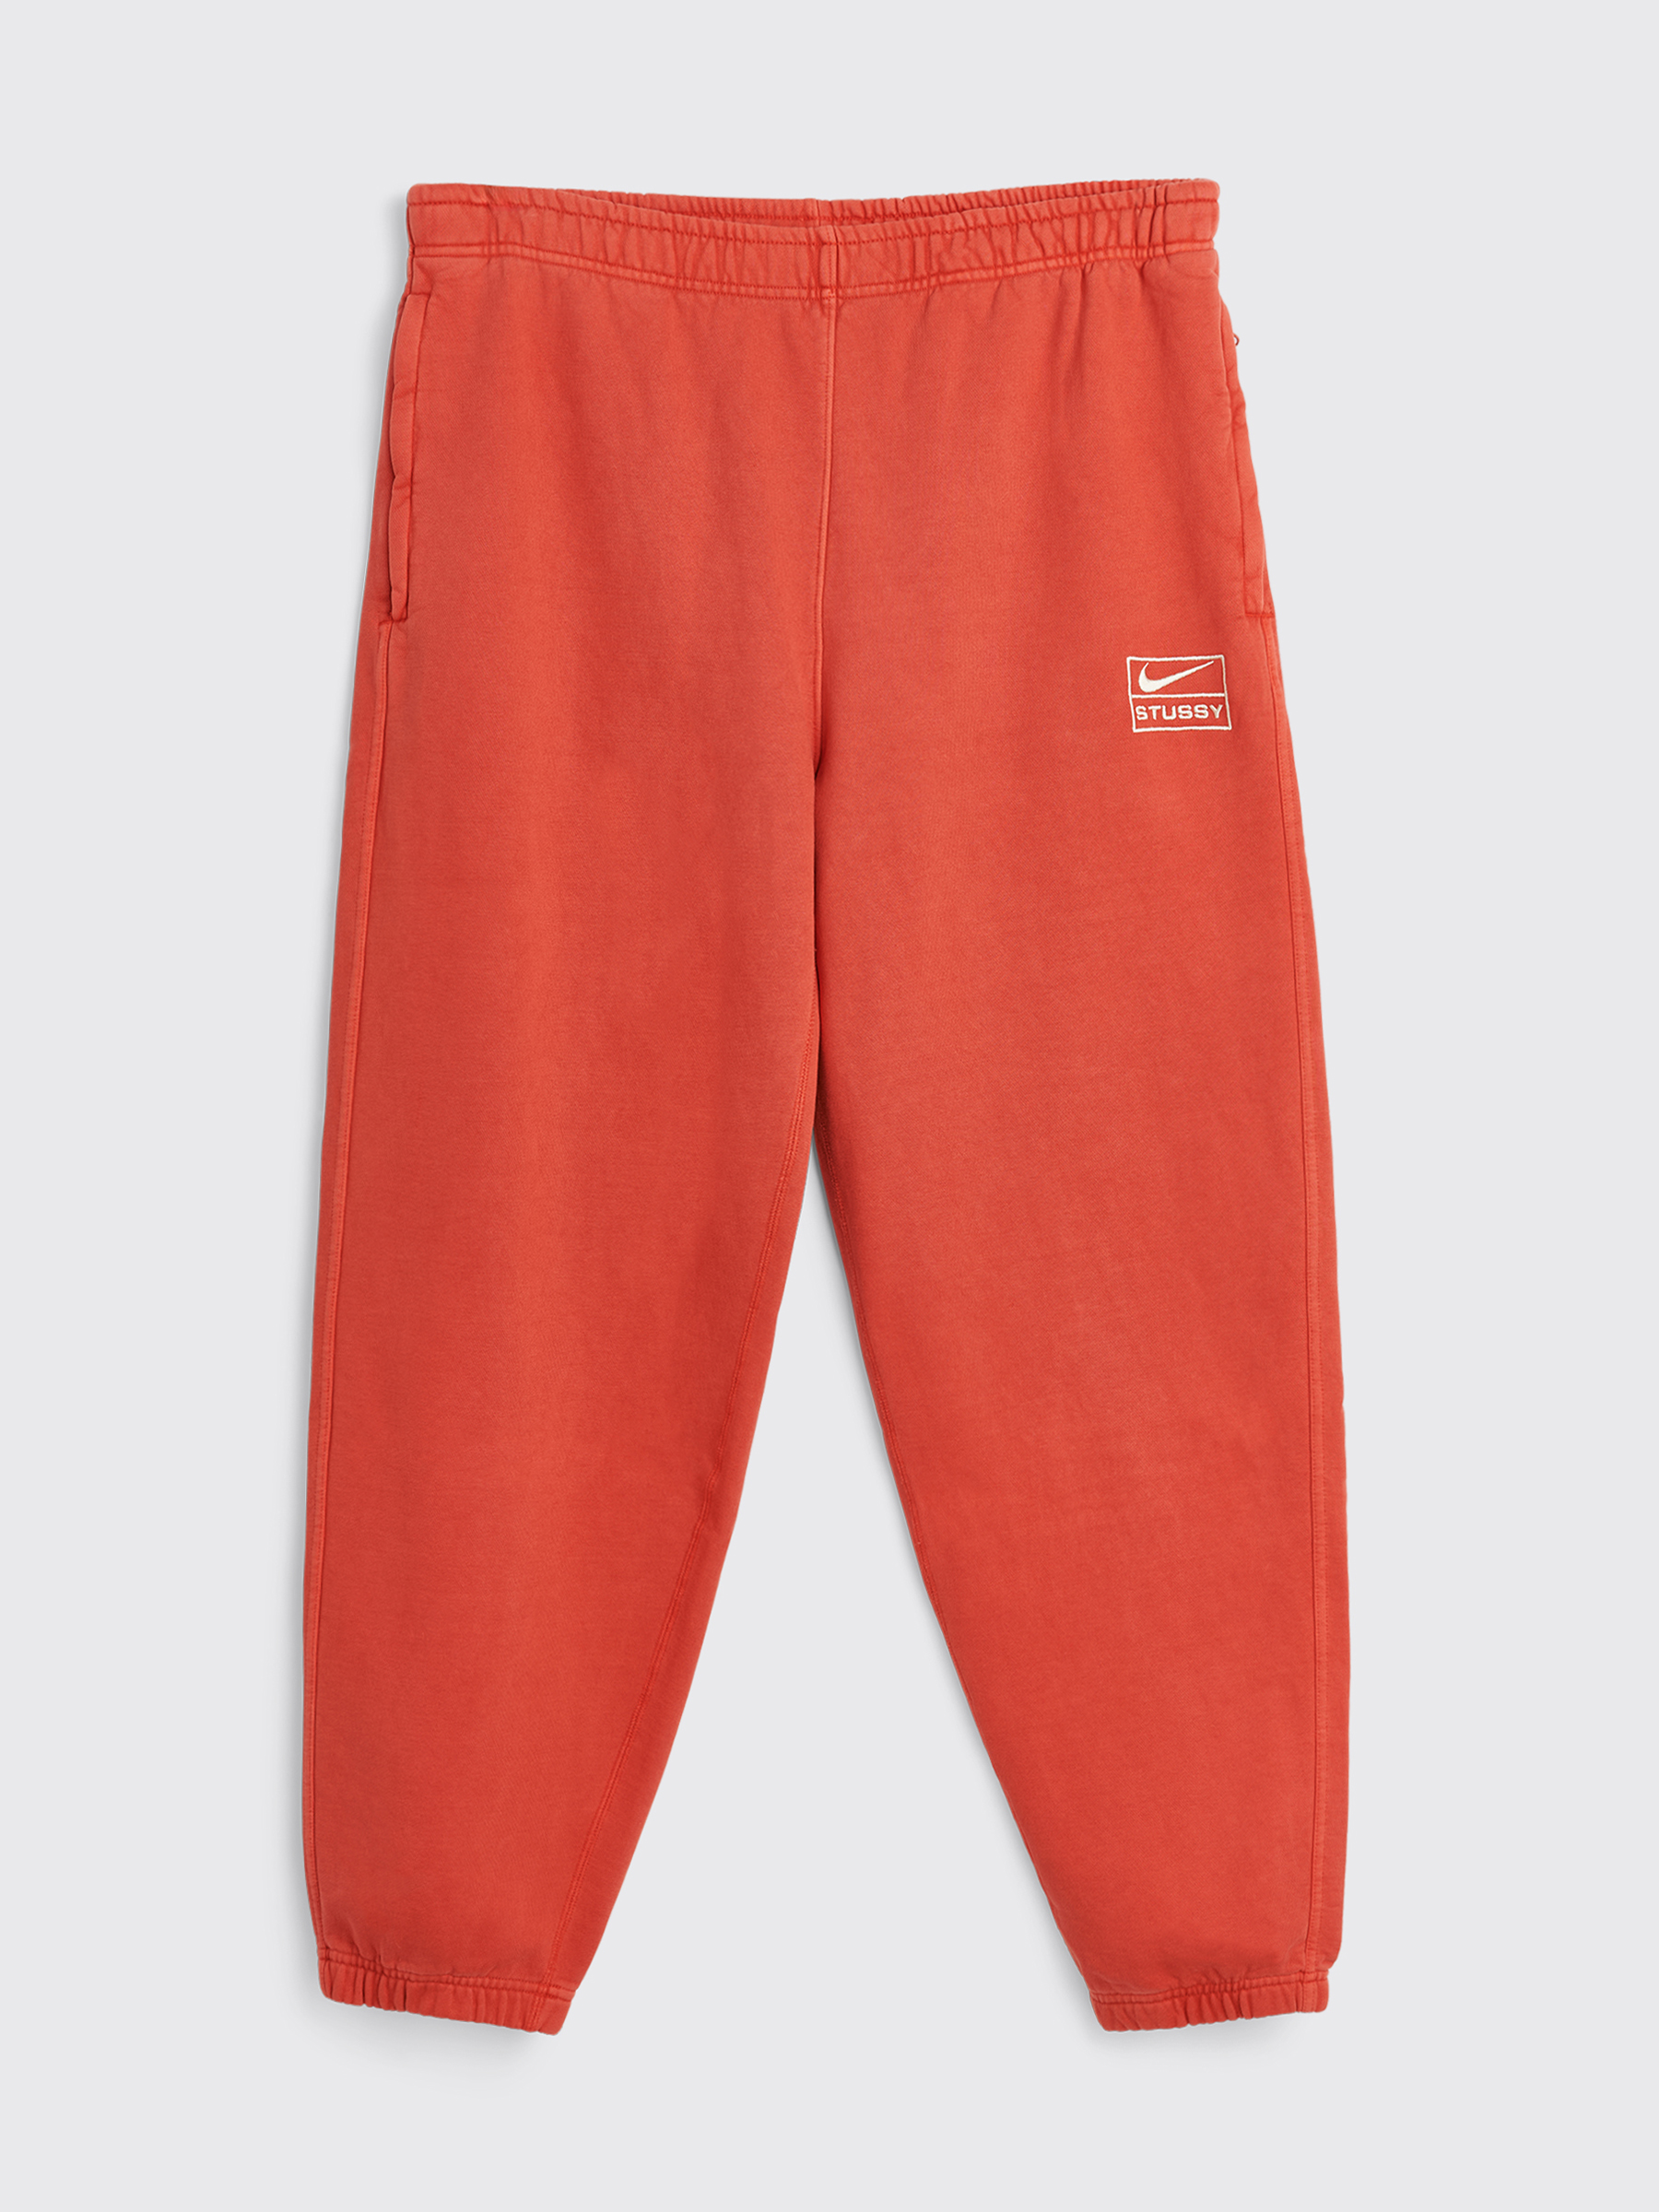 Nike x Stussy Beach Pants size XL